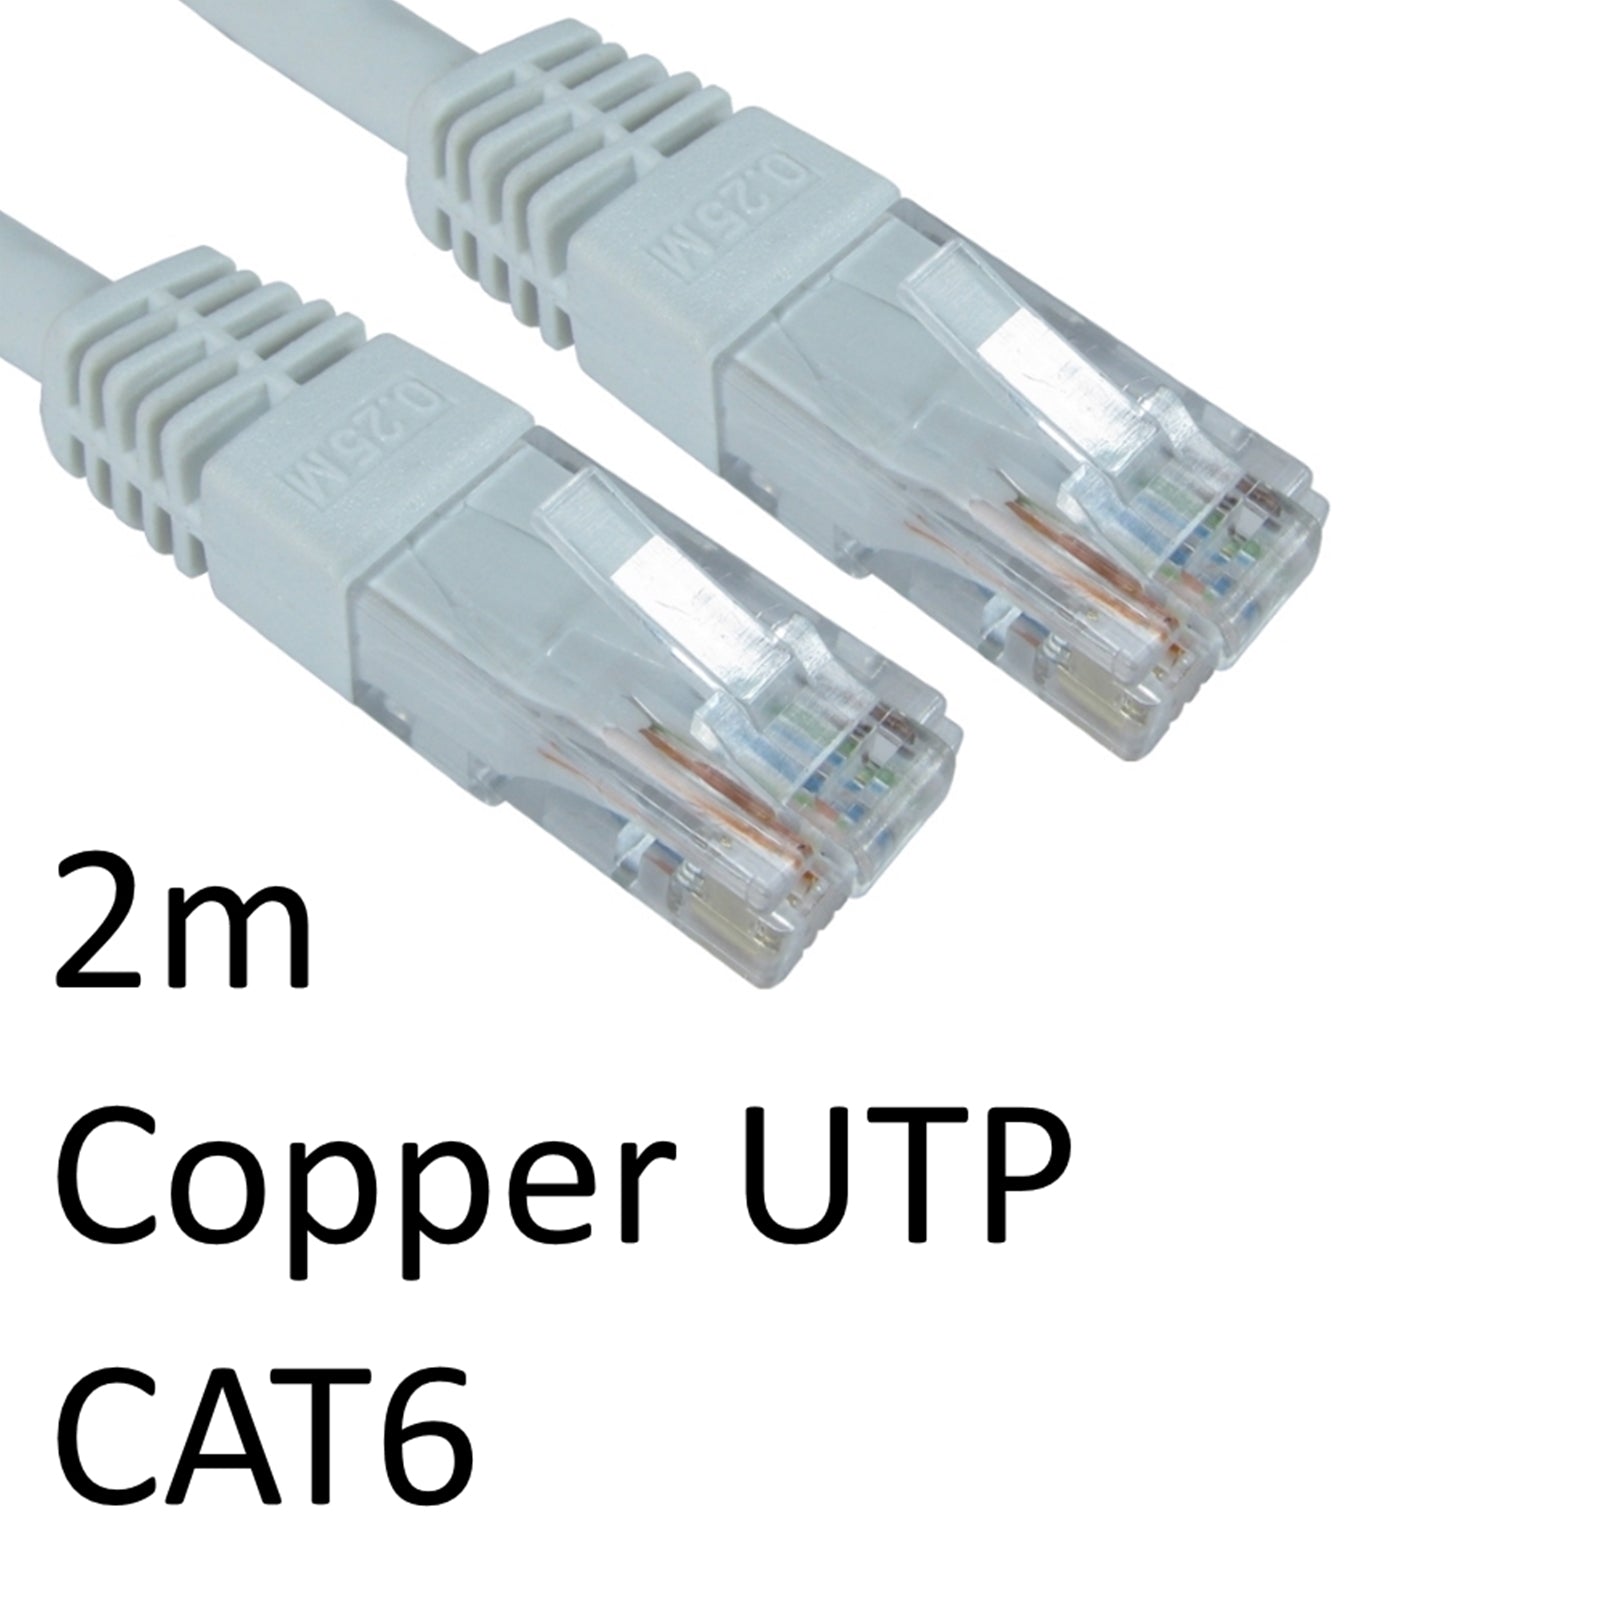 2m CAT6 RJ45 Copper UTP Network Cable - White